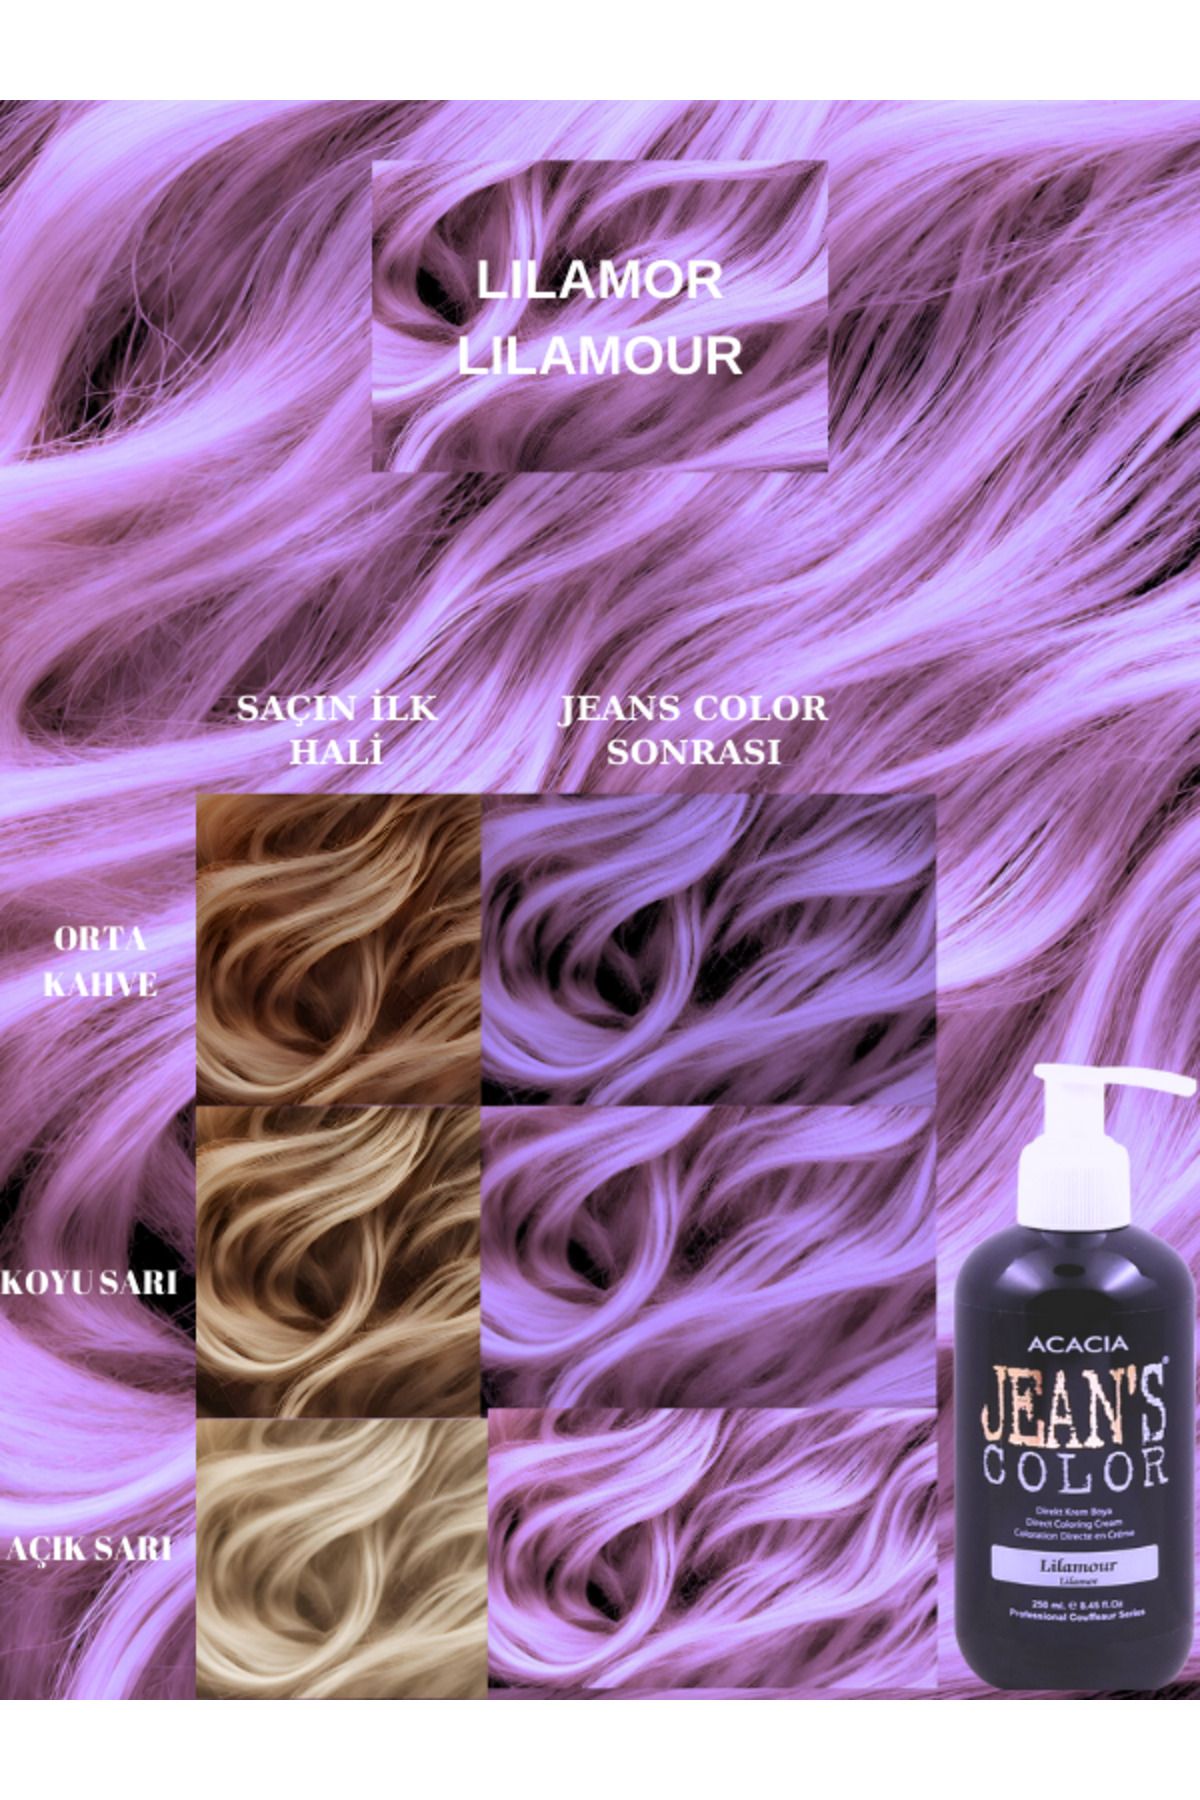 jeans color Amonyaksız Renkli Saç Boyası Lilamor 250ml. Kokusuz Su Bazlı Lilamour Hair Dye